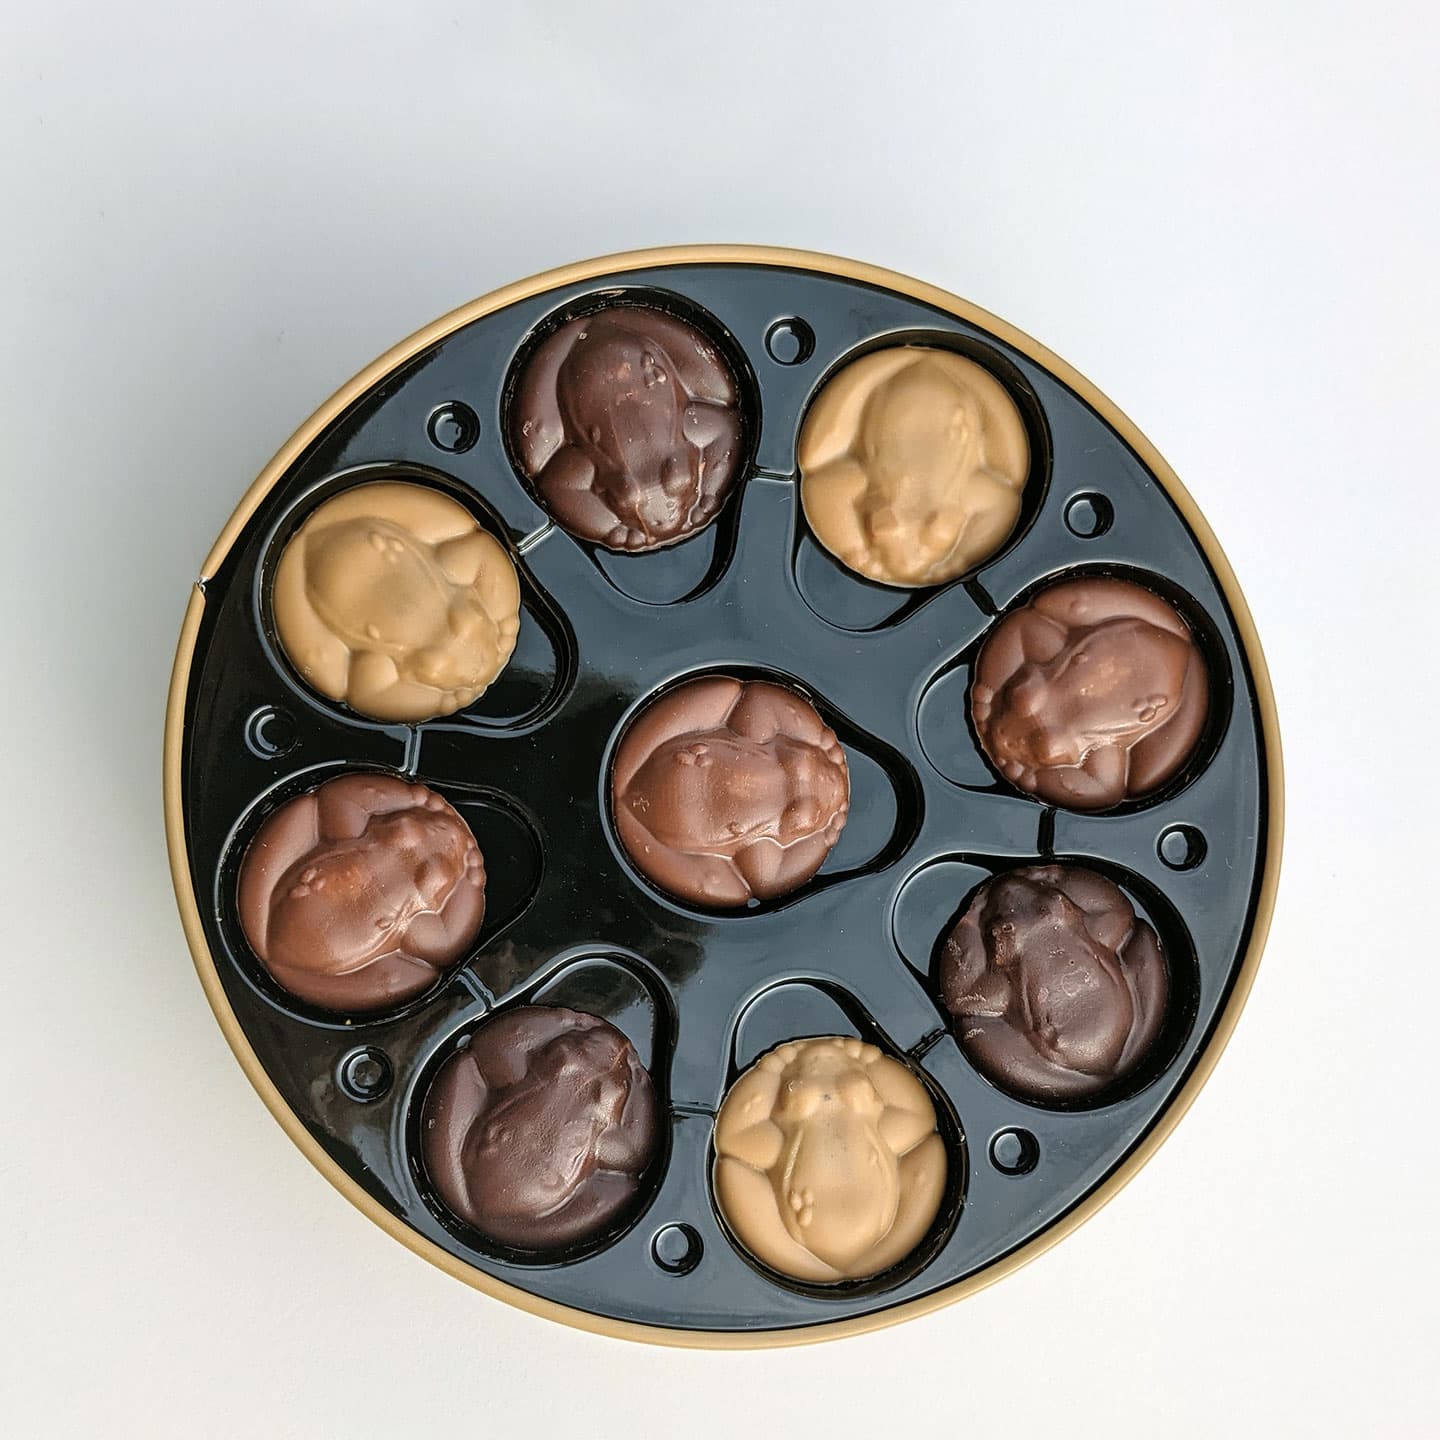 Palets Chocolat Noir, Lait, Blond Praliné Tournesol 230g - 45 pièces Grenouilles de la Dombe